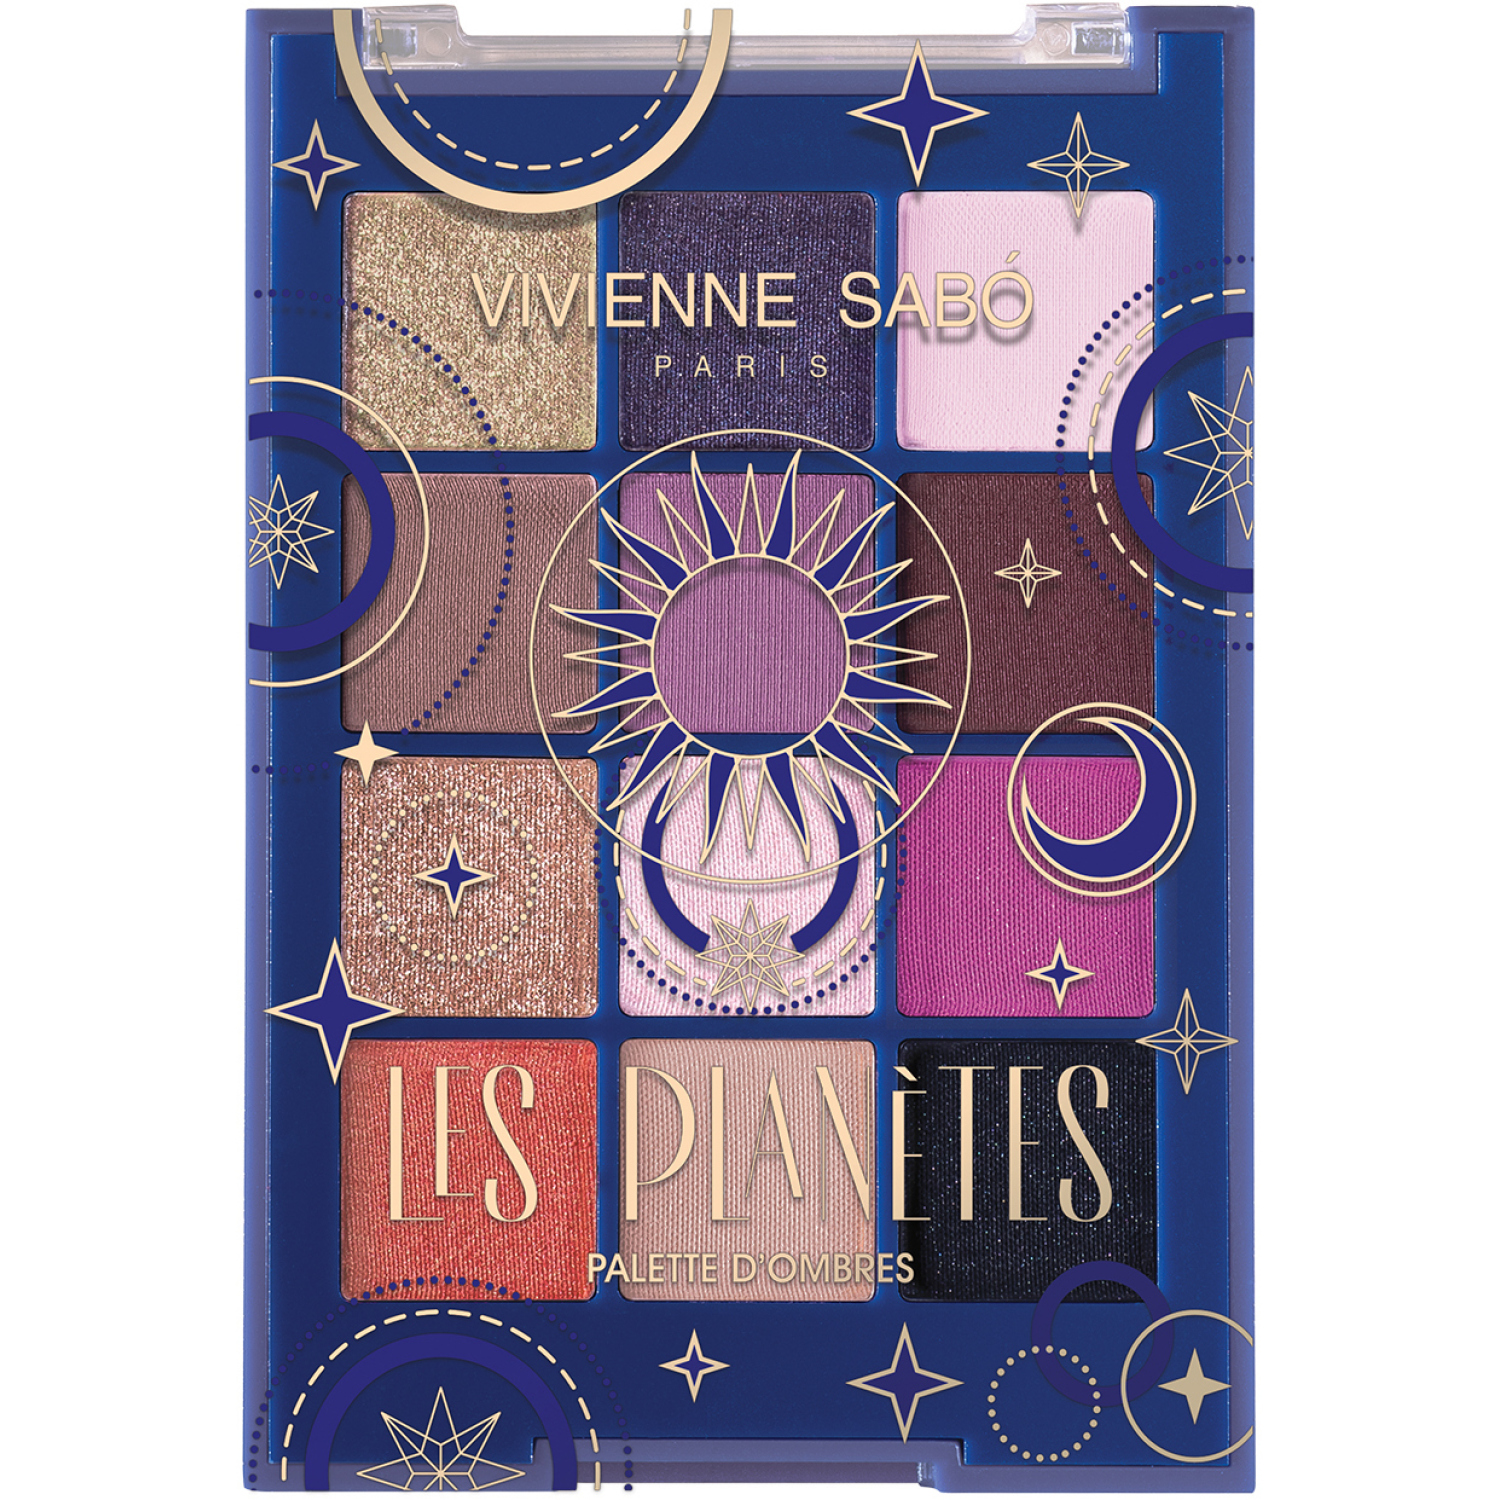 Палетка теней для глаз Vivienne Sabo Les planetes, 12 стойких оттенков в трех текстурах – матовой, сатиновой и сияющей, 9,6гр.